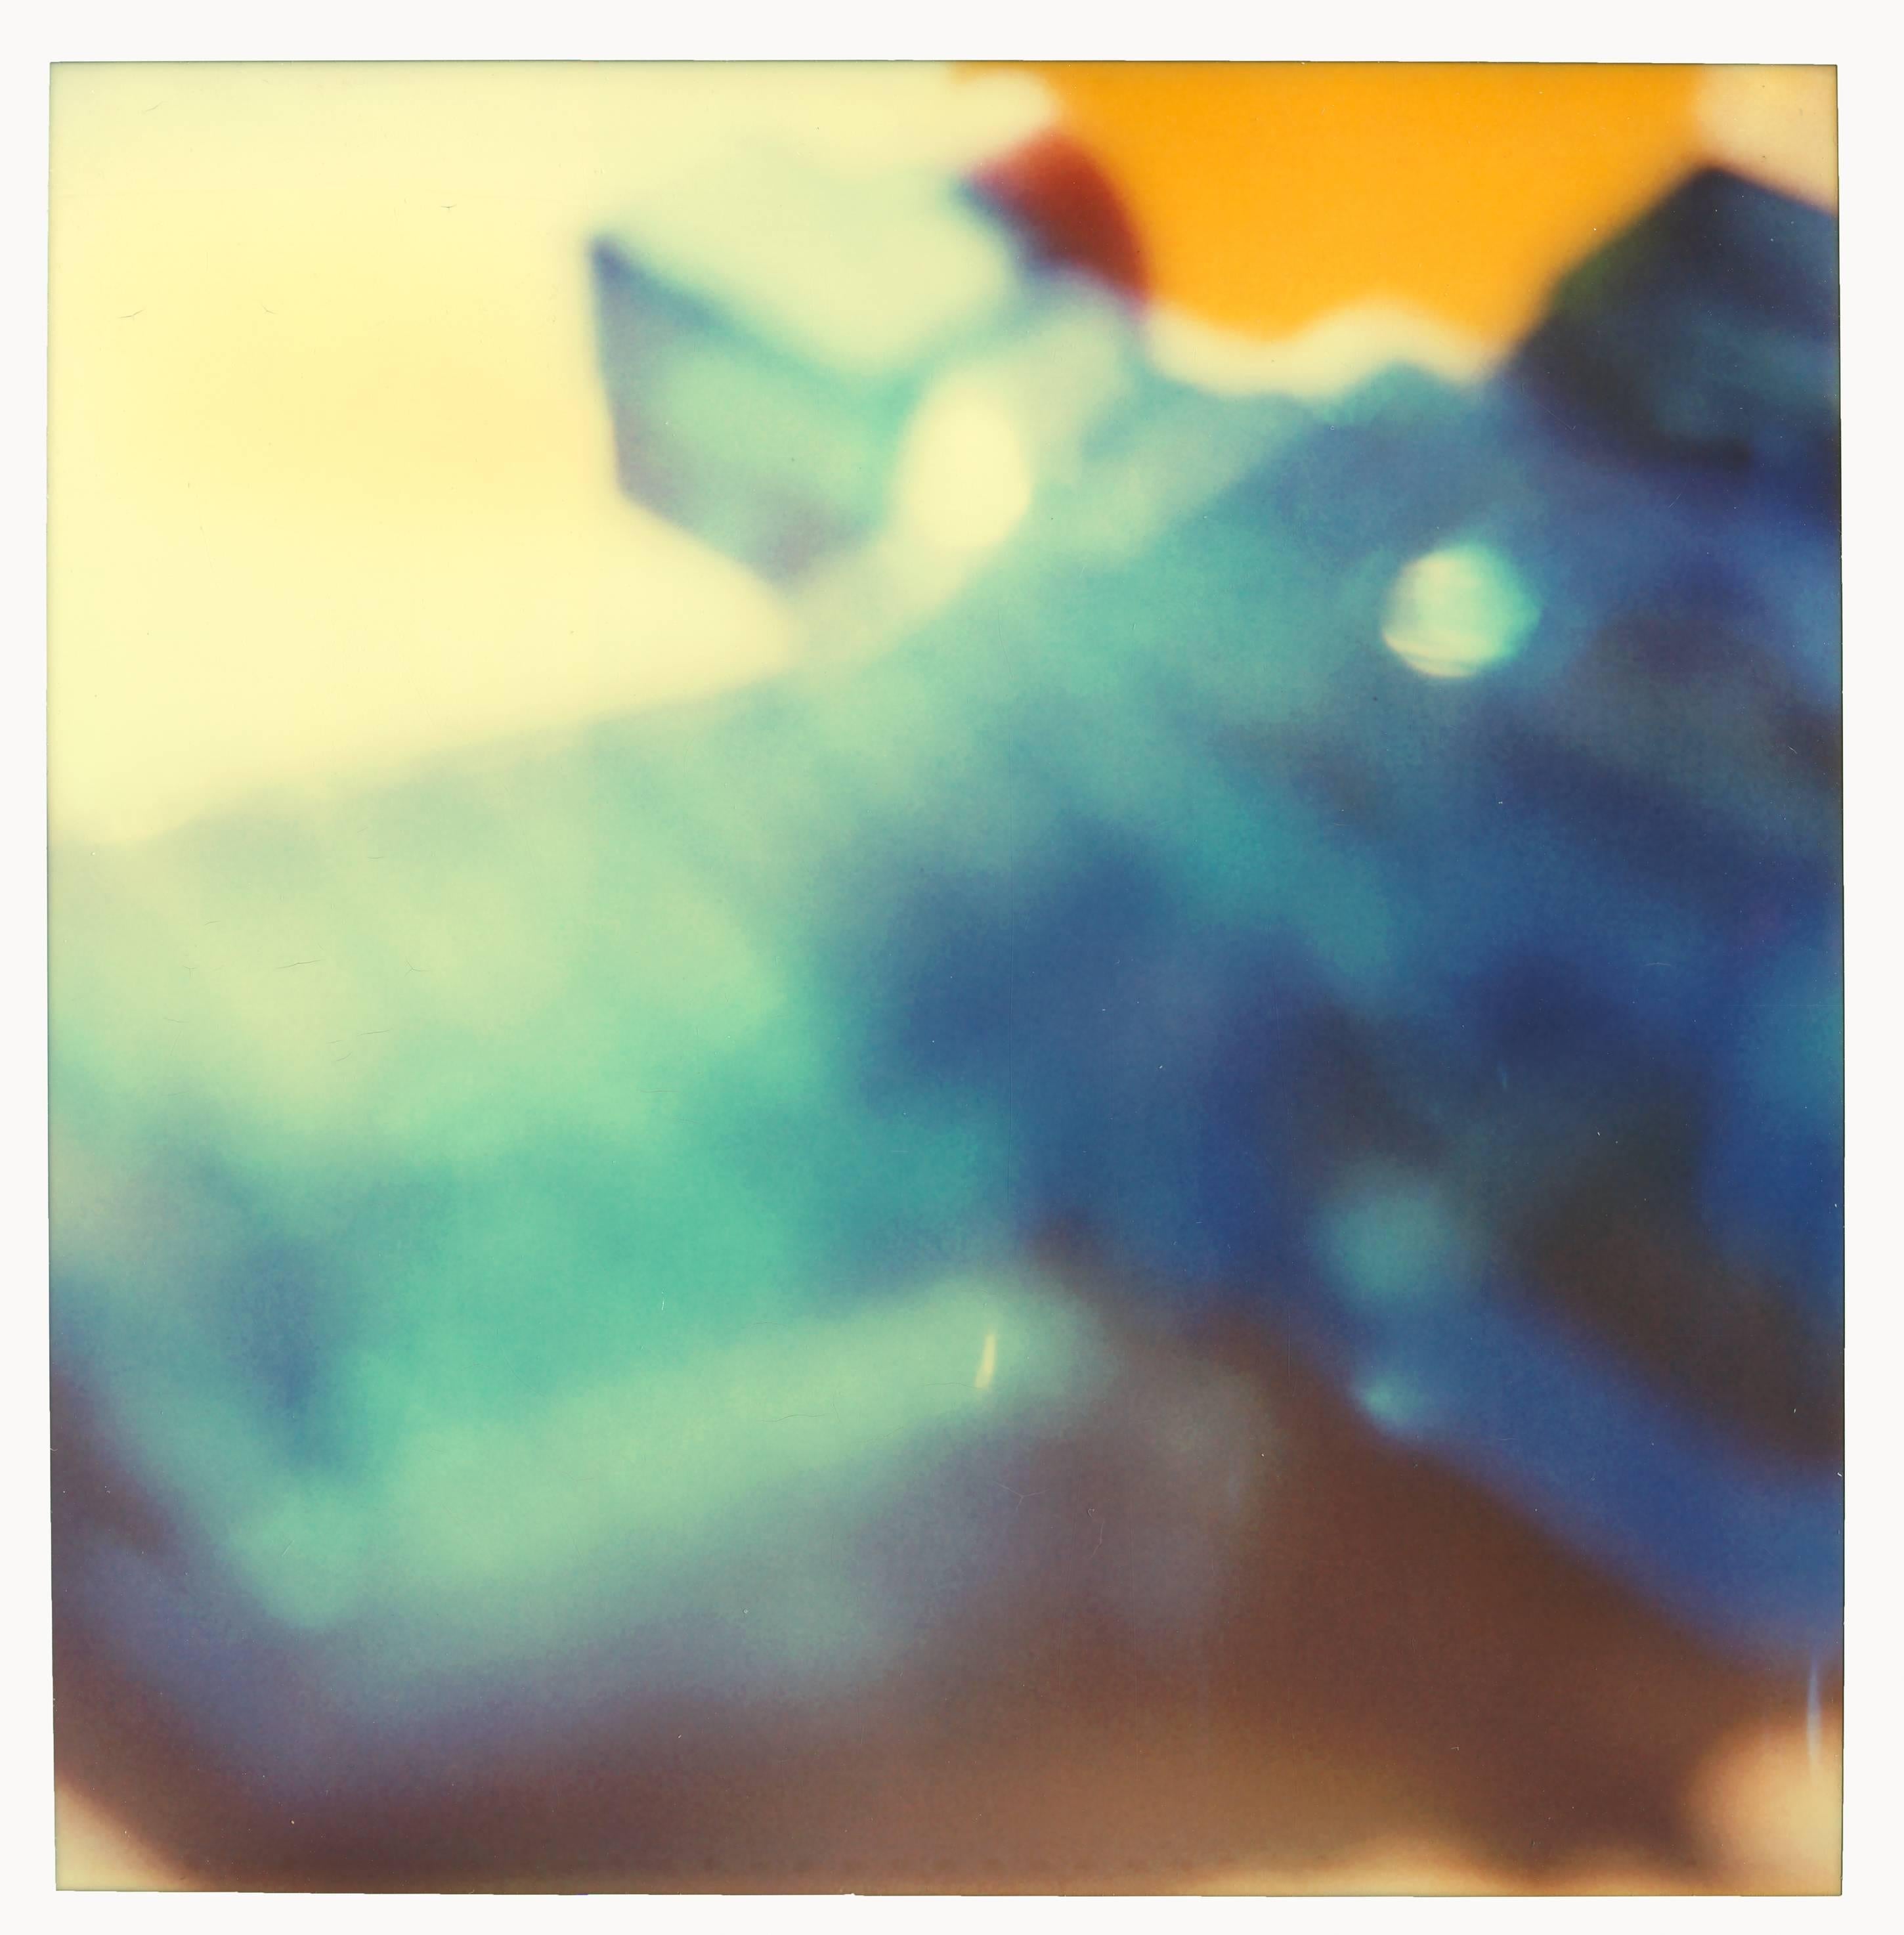 Blue Water Pistol - 29 Palms, CA, diptych - Photograph by Stefanie Schneider